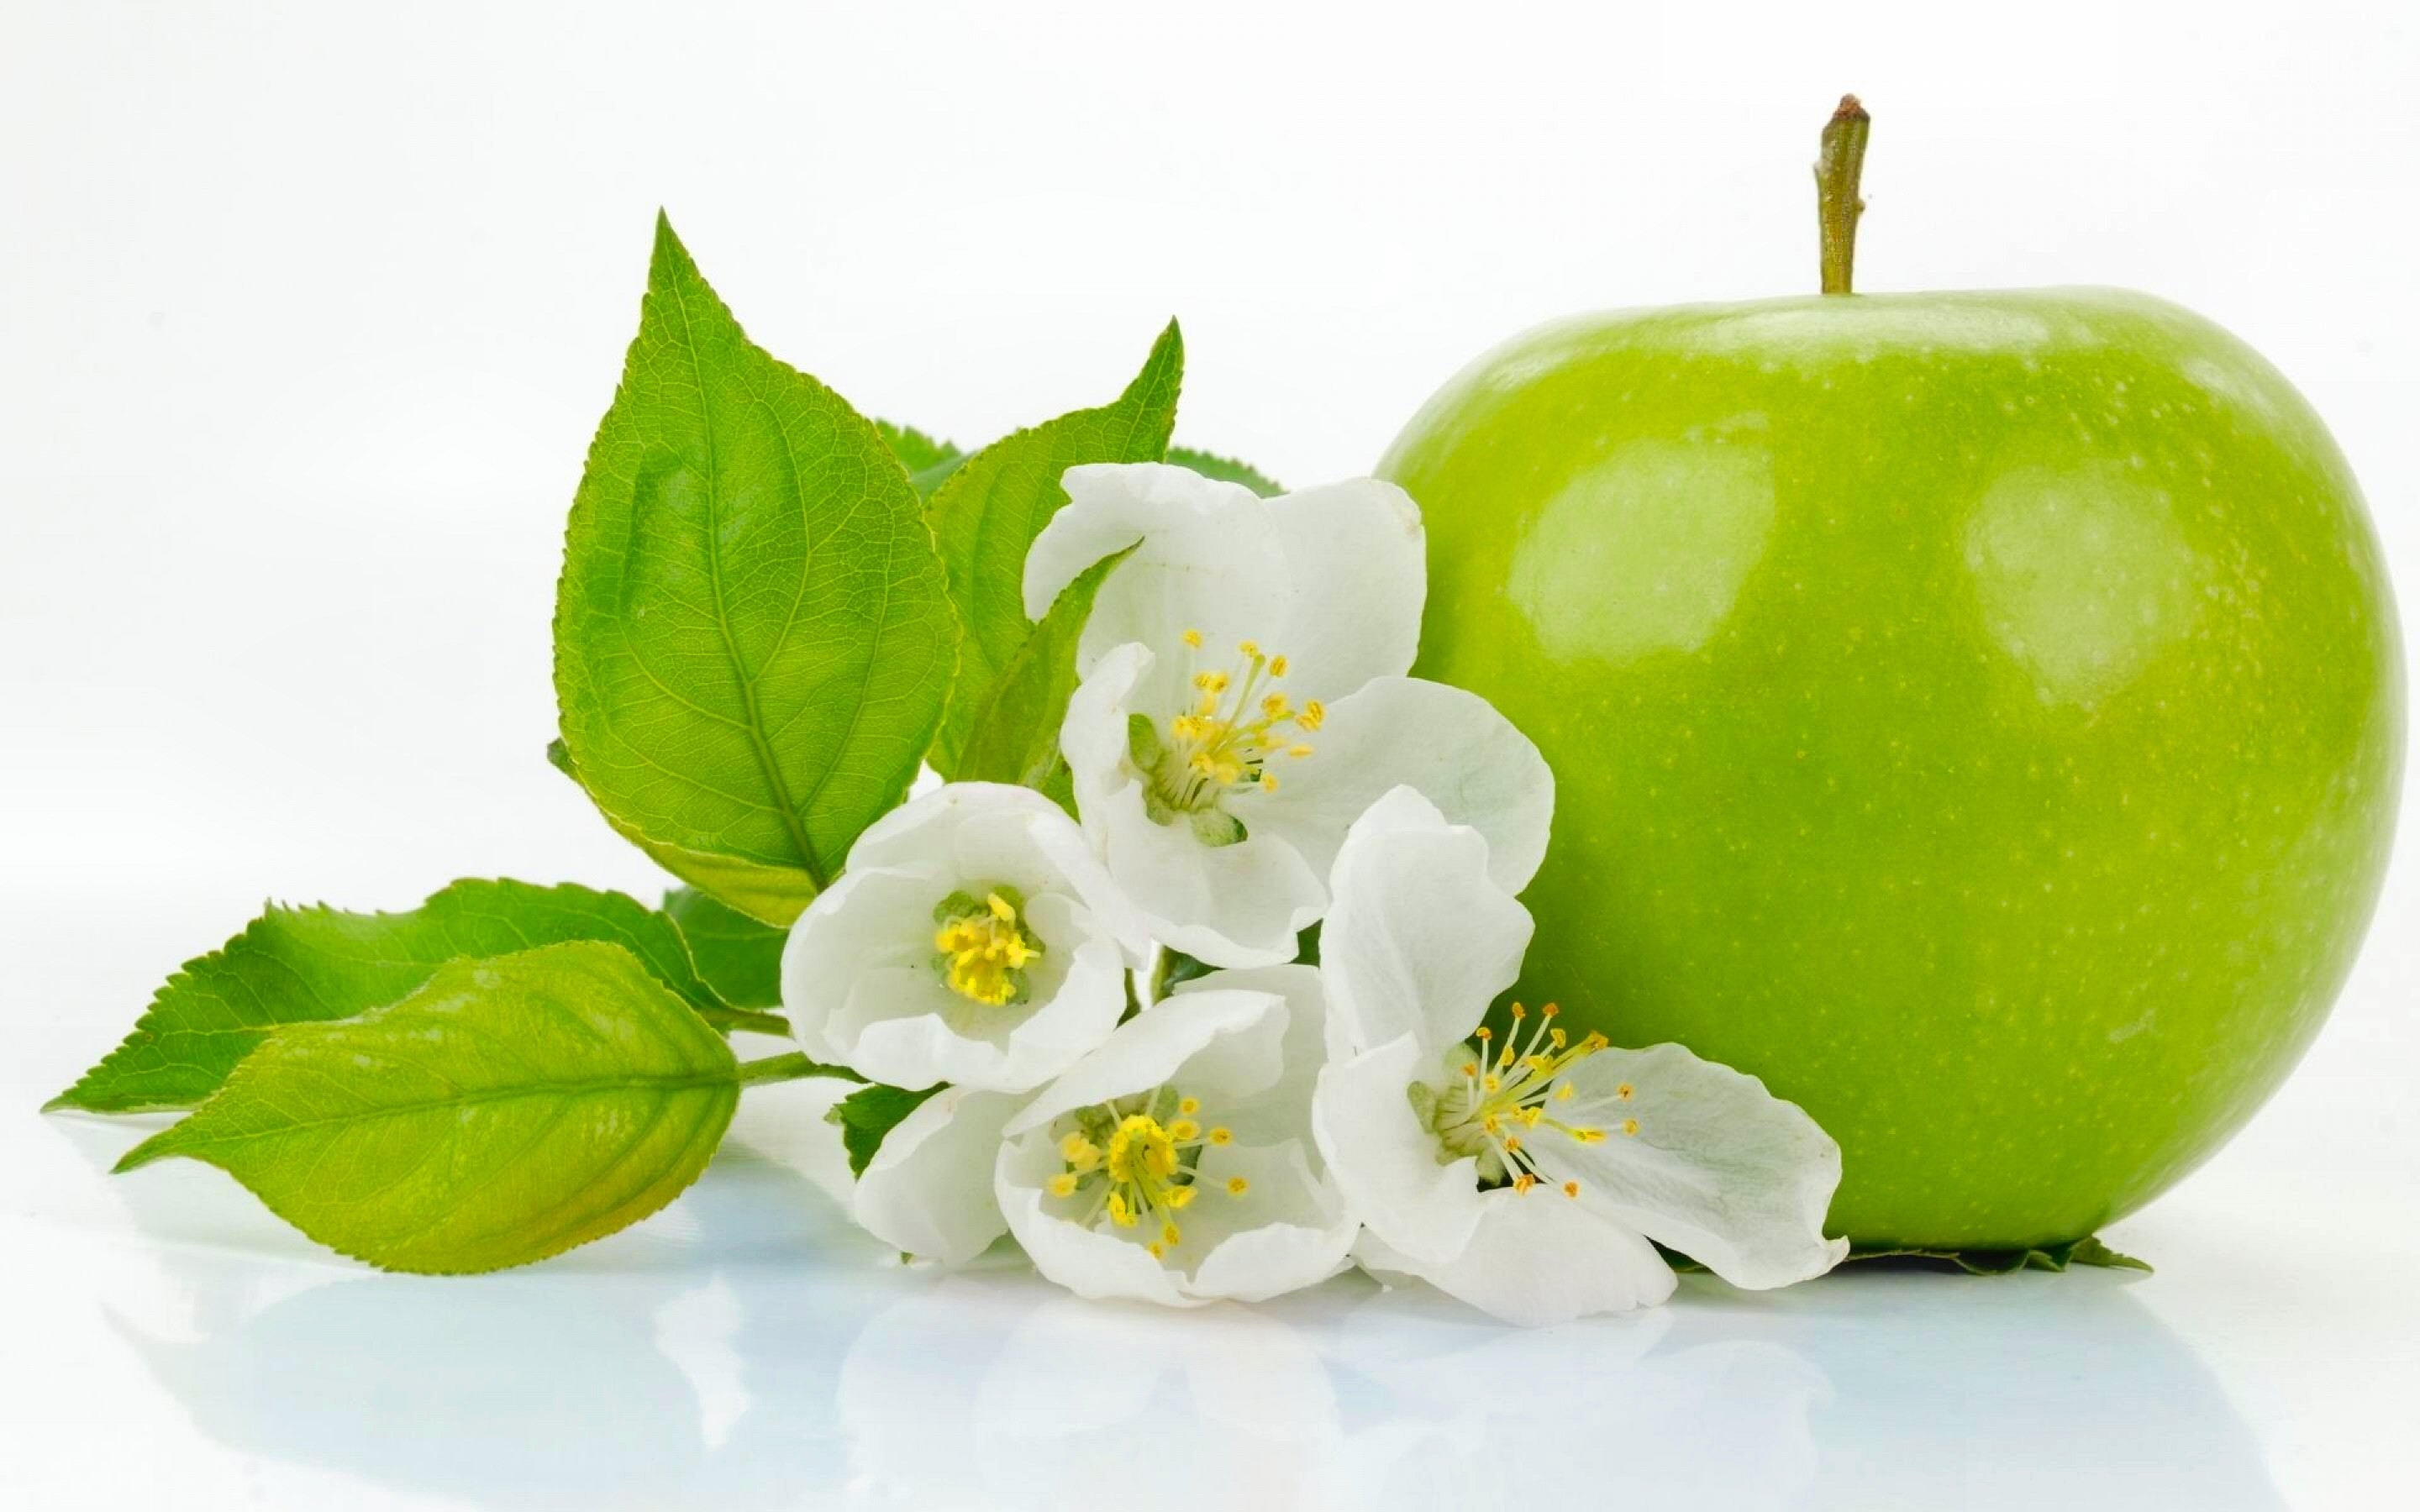 Фото обои яблоко, фрукты, зелёный, цветок, еда - бесплатные картинки на Fonwall